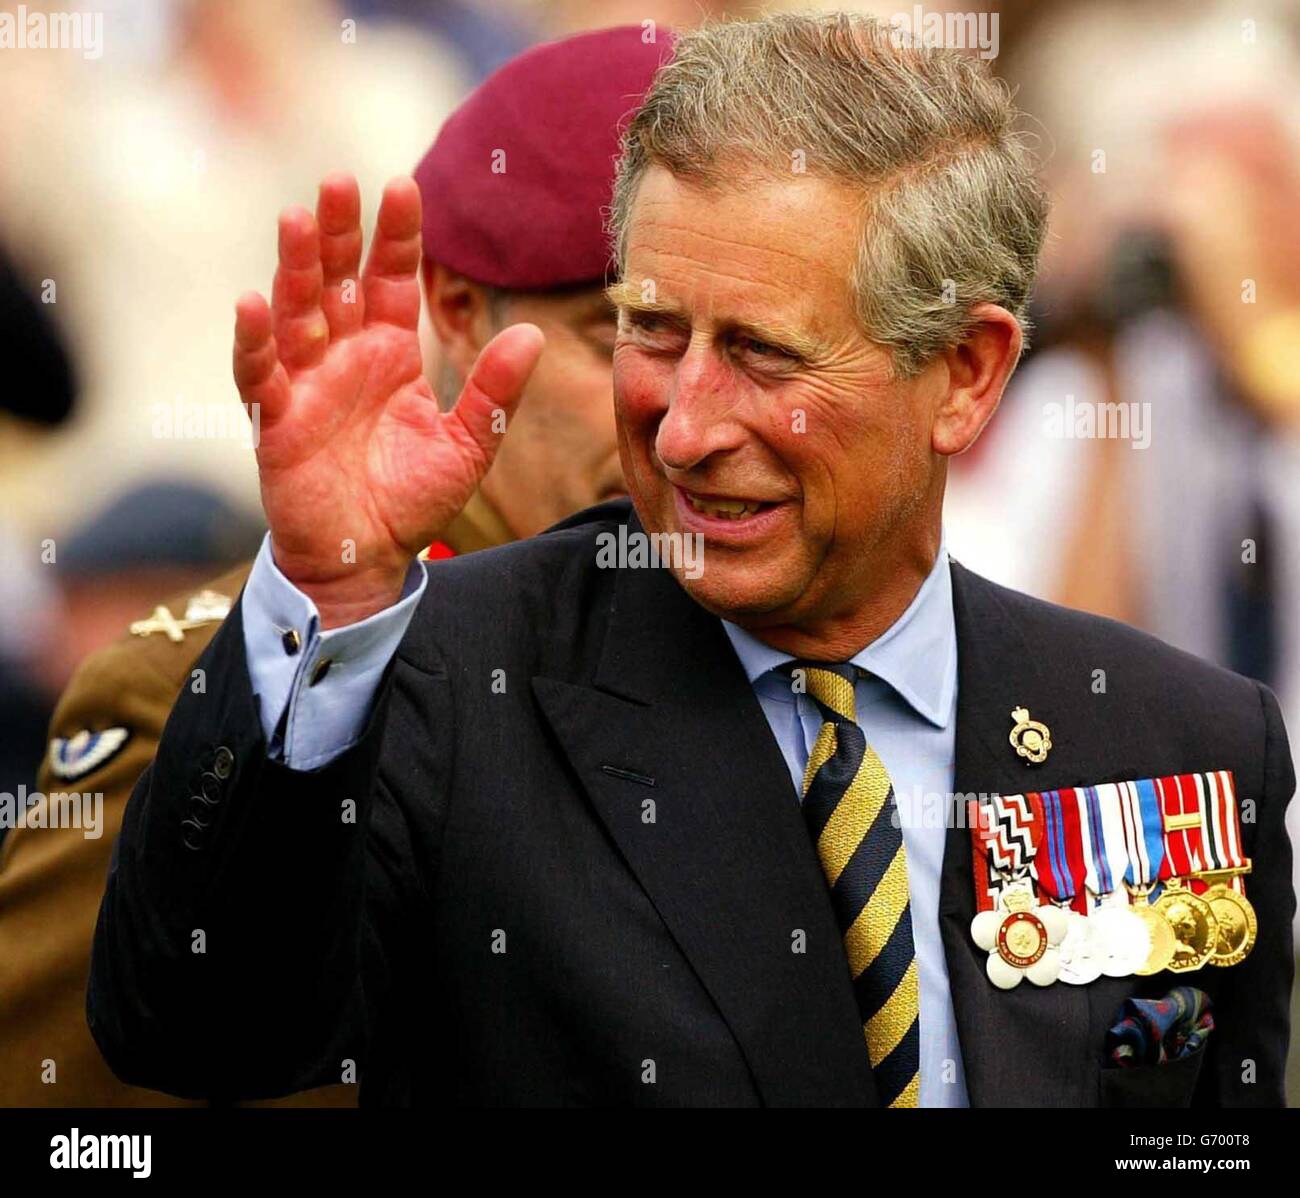 Großbritanniens Prinz Charles winkt Veteranen während seines Besuchs im British Garden of Remembrance in Caen, Normandie, Frankreich. Die Staats- und Regierungschefs der Welt werden sich am 6. Juni zu Feierlichkeiten zum 60. Jahrestag der Landung der Alliierten in der Normandie versammeln. Stockfoto